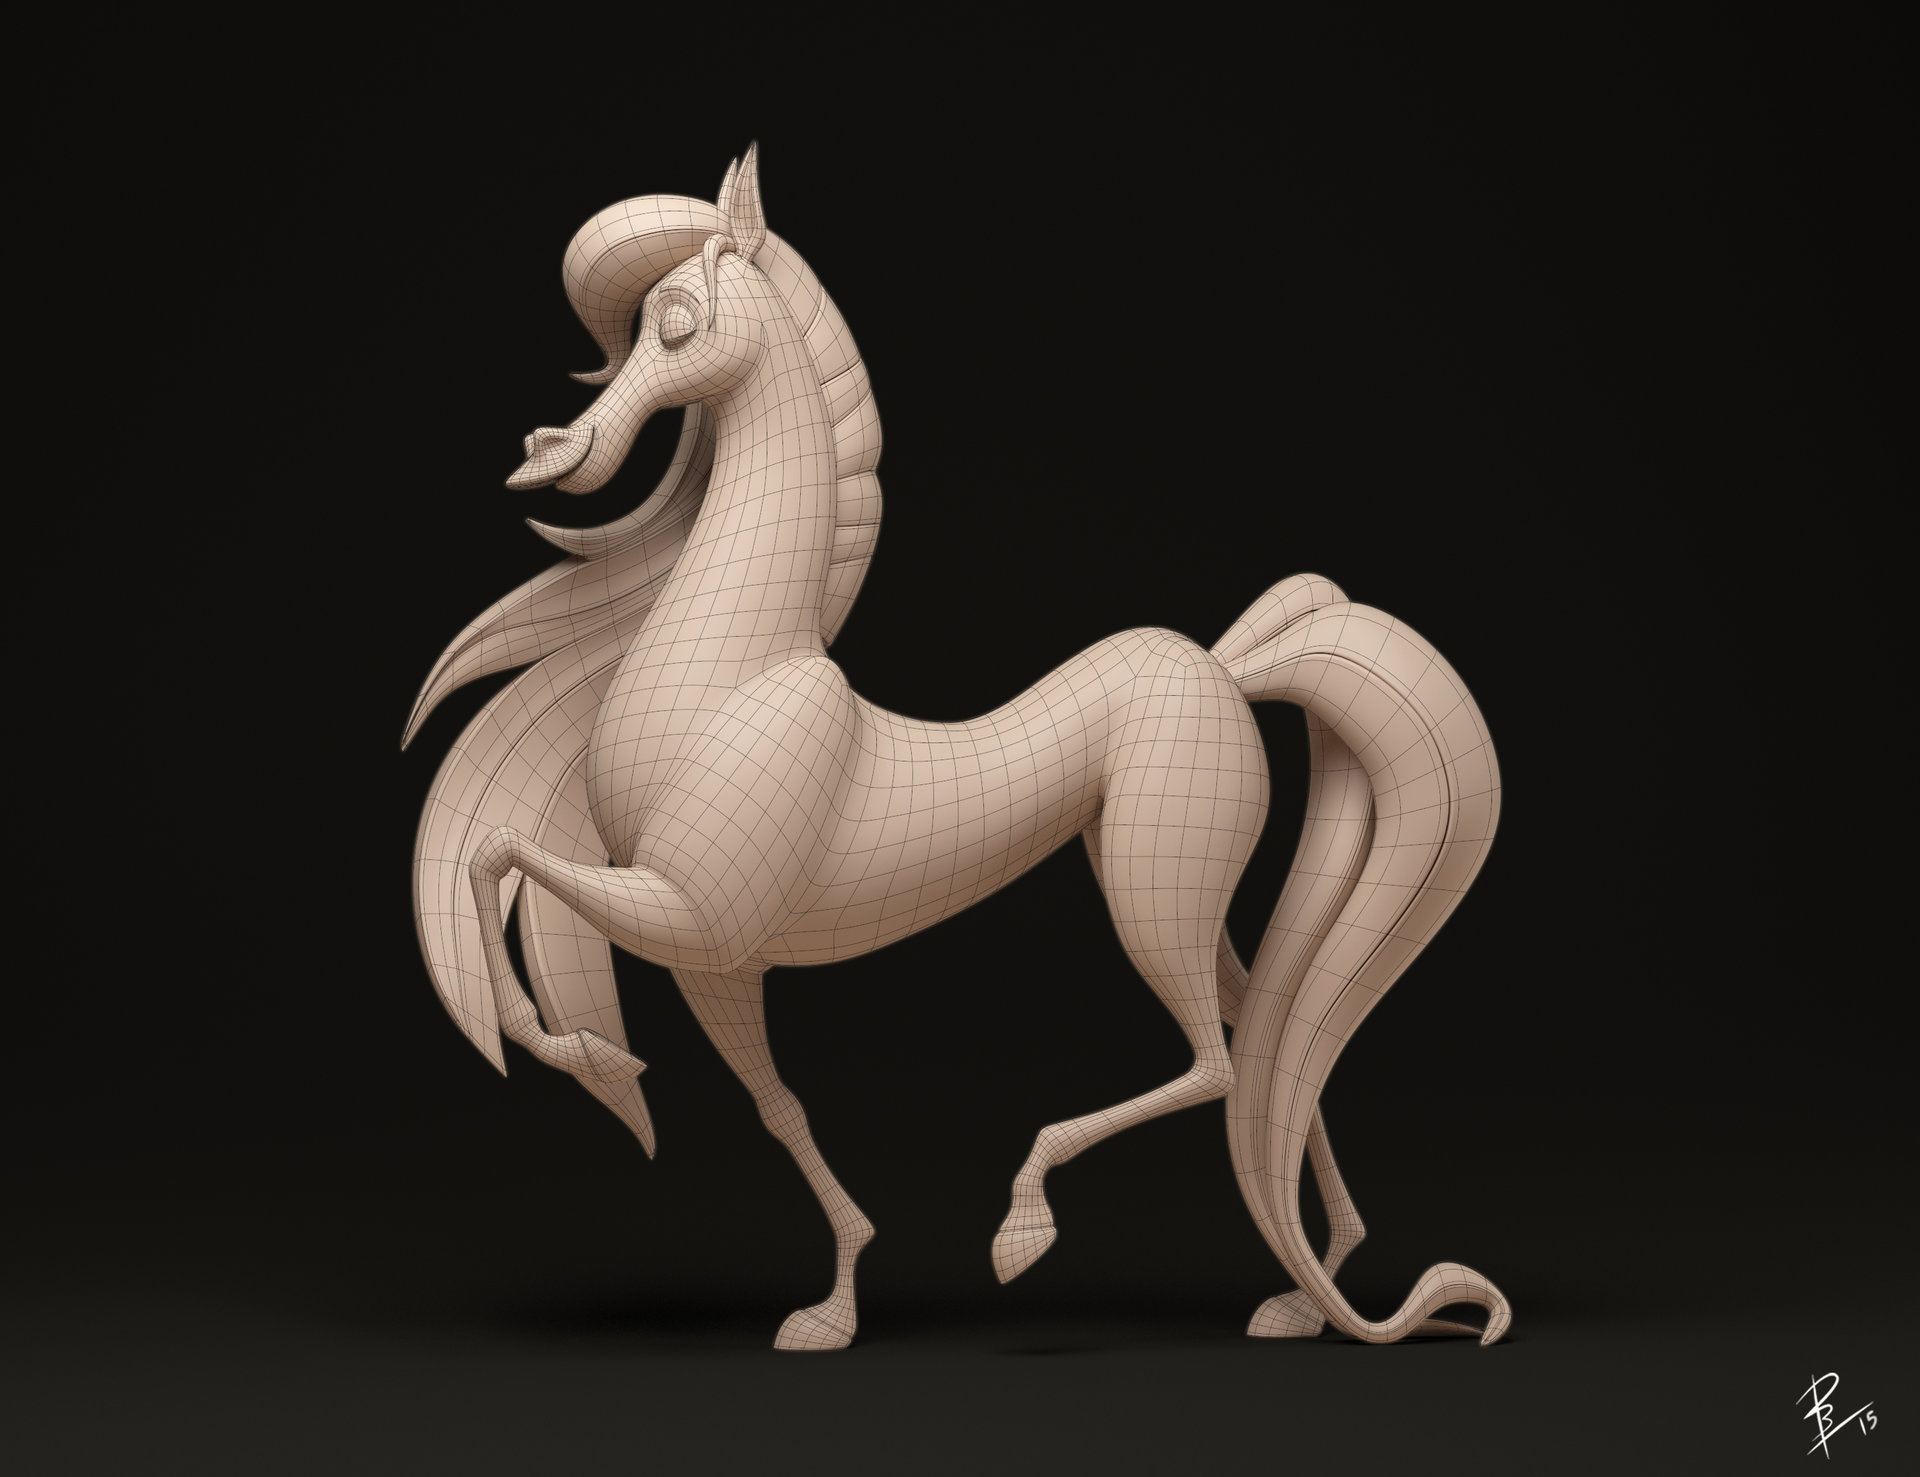 david-barrero-horse-postpo-sculpt.jpg